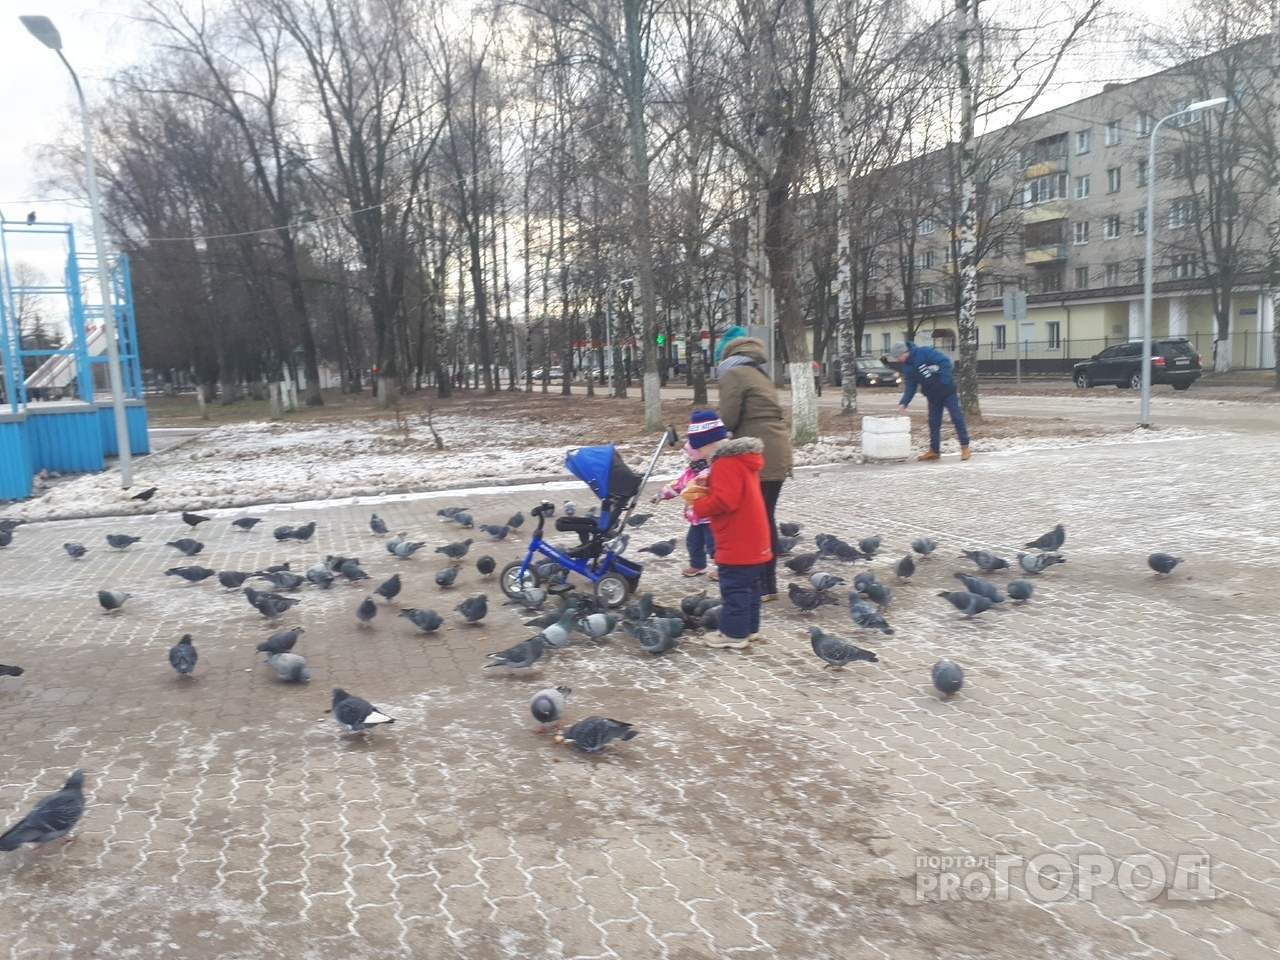 "Город выкинул деньги": блогер Варламов о парке Ярославля, отремонтированном за 23 миллиона